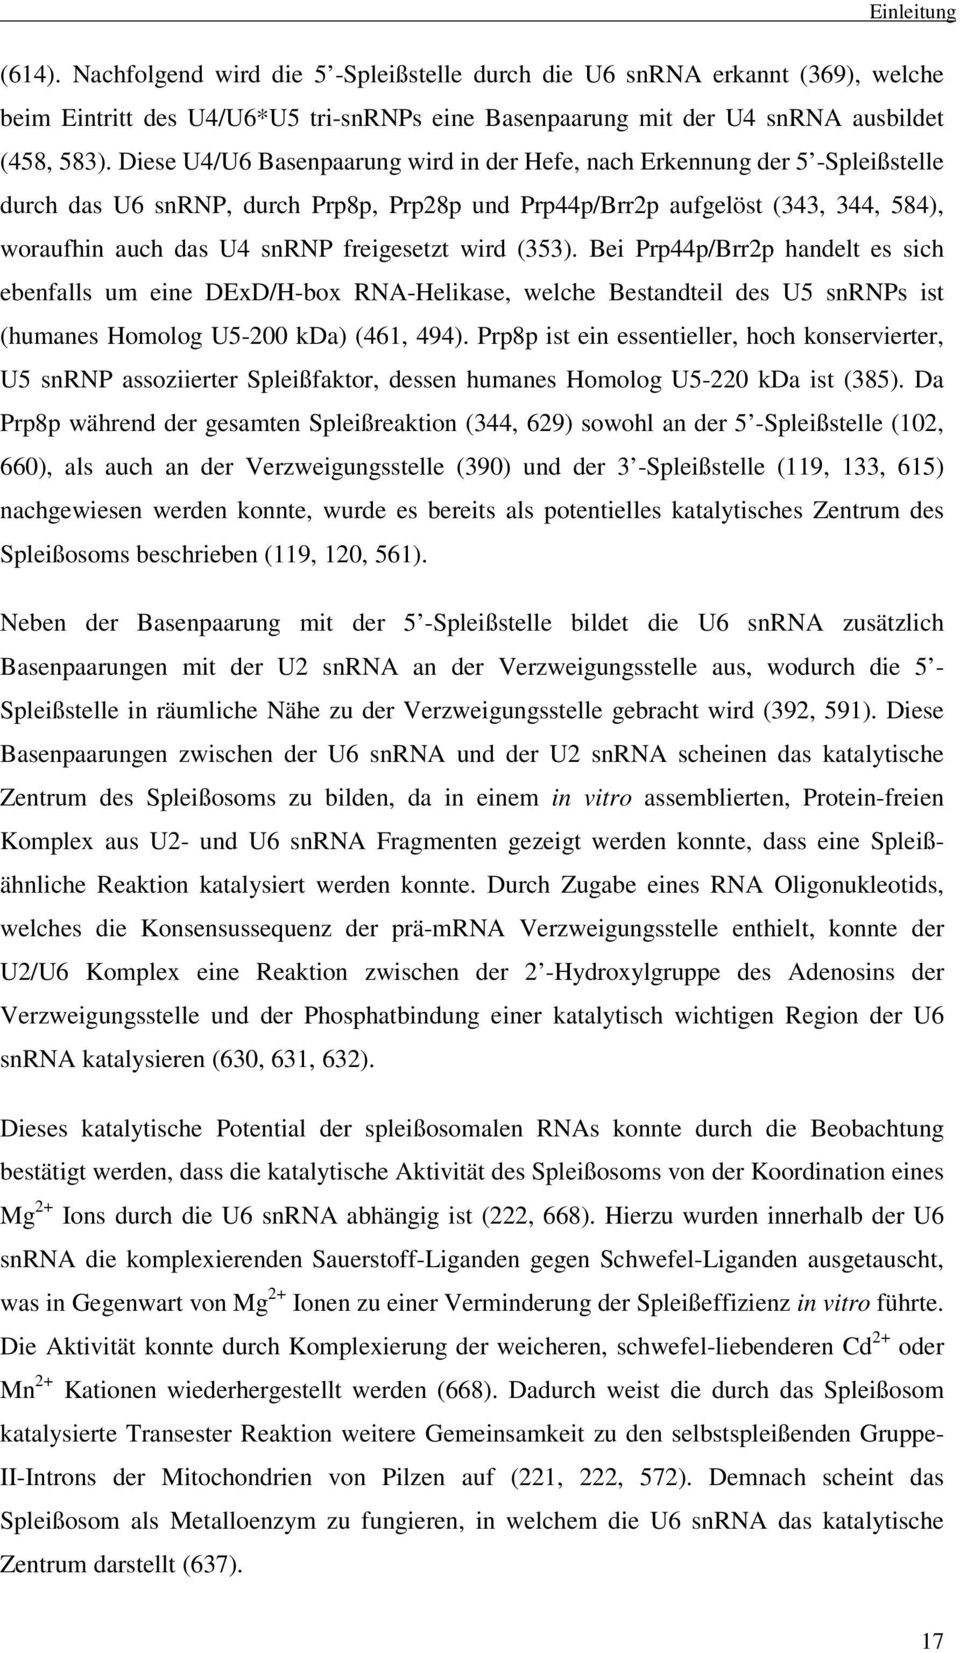 freigesetzt wird (353). Bei Prp44p/Brr2p handelt es sich ebenfalls um eine DExD/H-box RNA-Helikase, welche Bestandteil des U5 snrnps ist (humanes Homolog U5-200 kda) (461, 494).